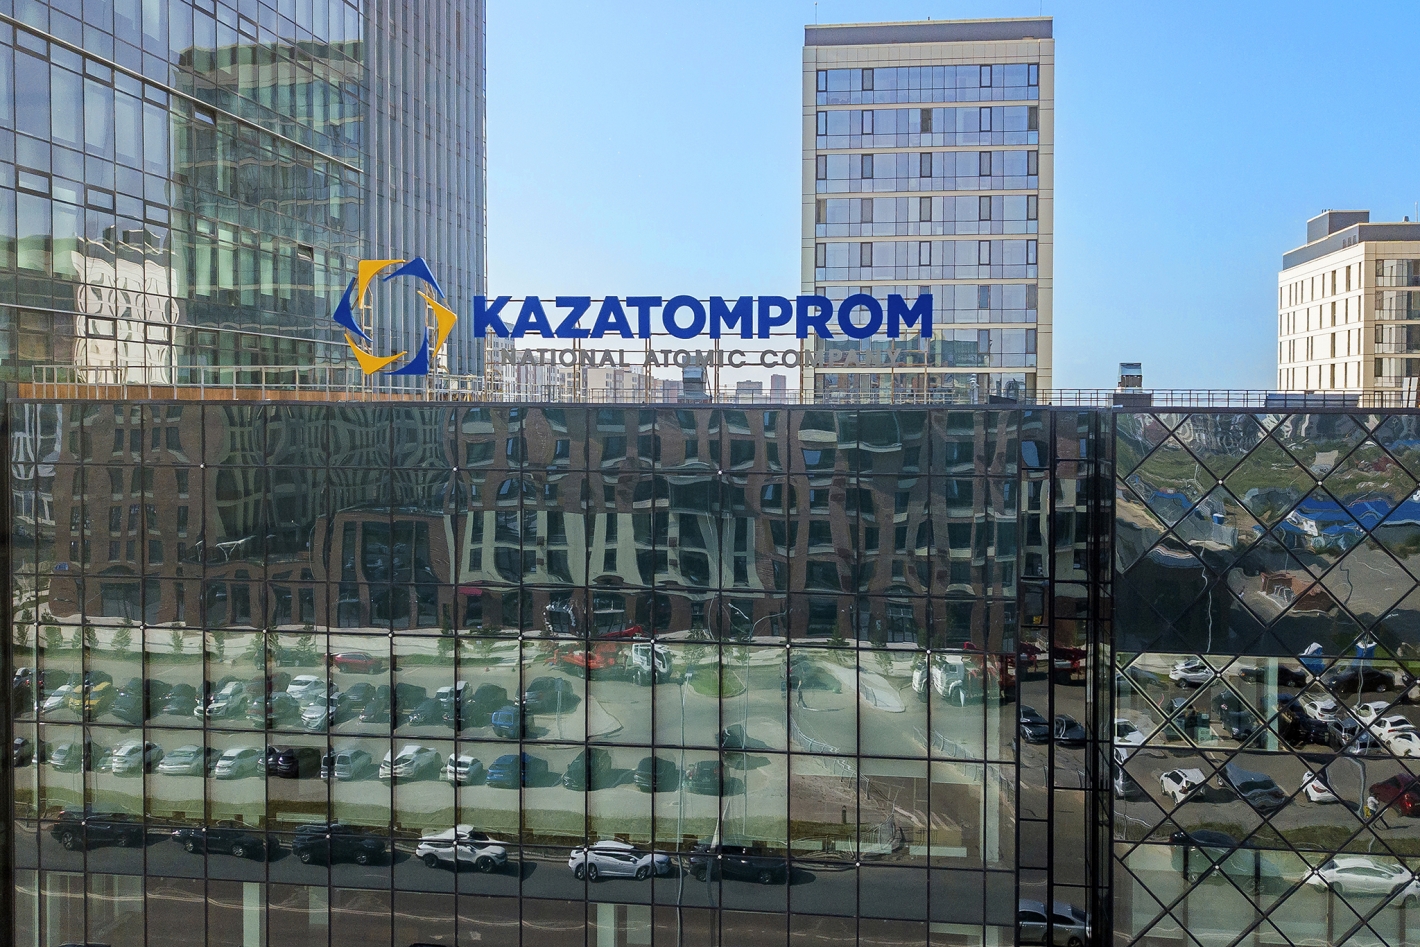 Kazatomprom Announces CFO Parental Leave